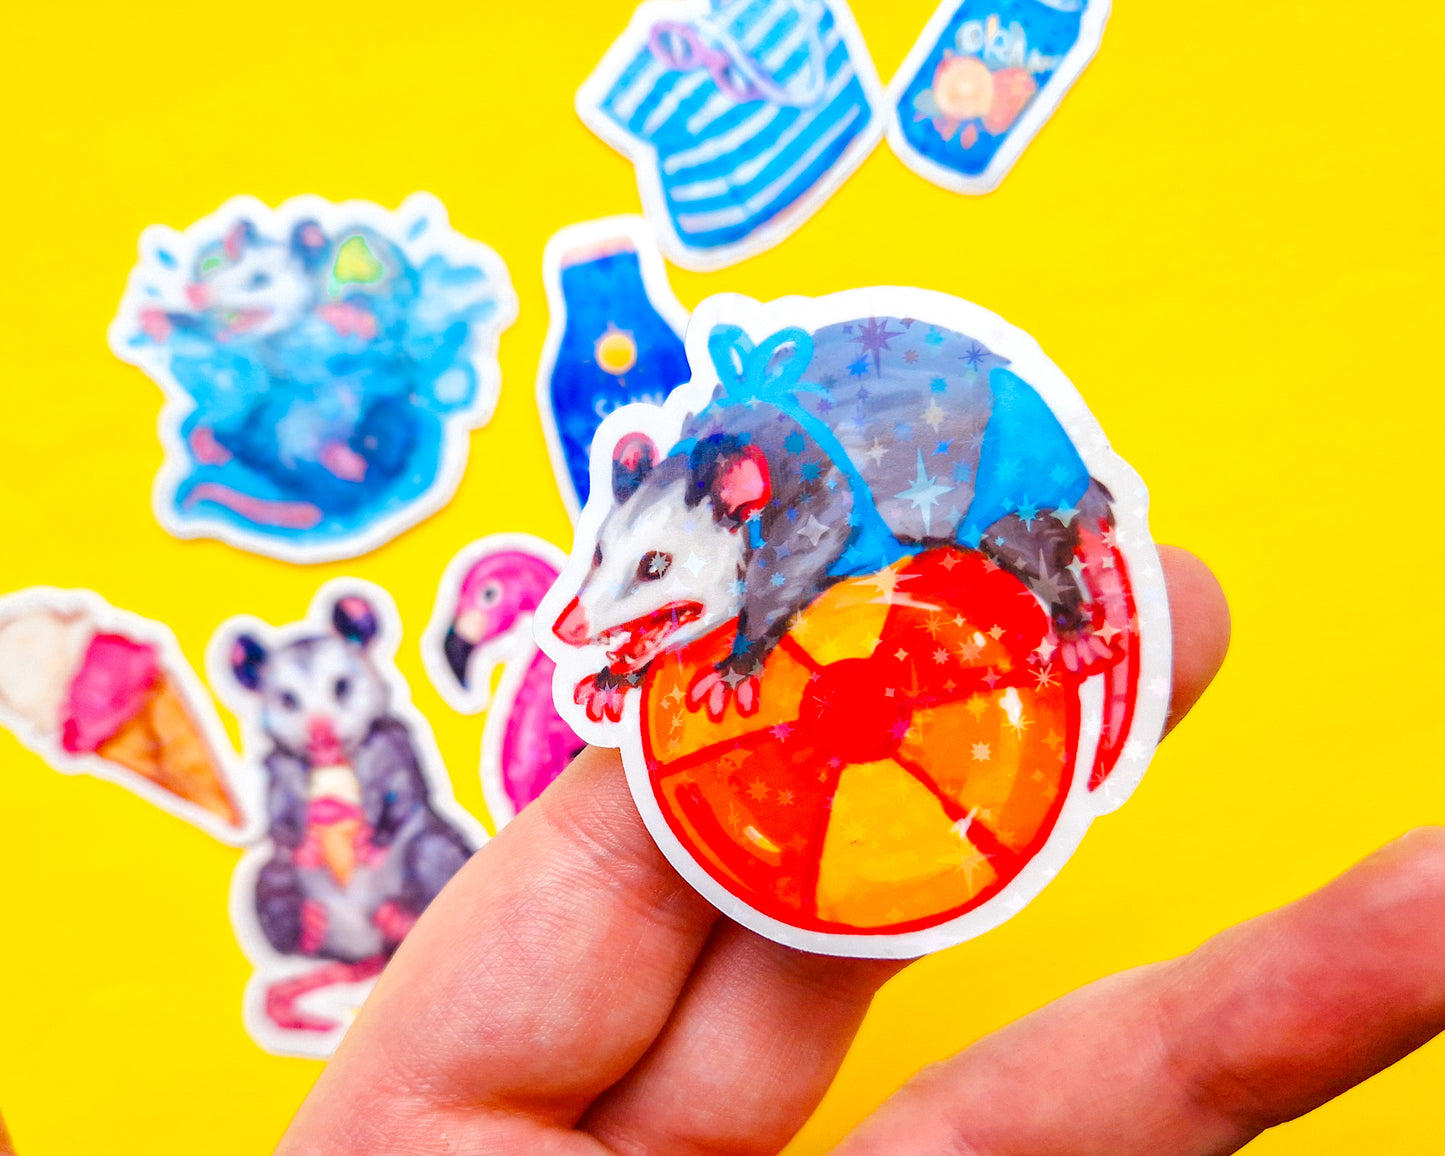 Summer Possum Sticker Pack - 8 Holographic Vinyl Stickers